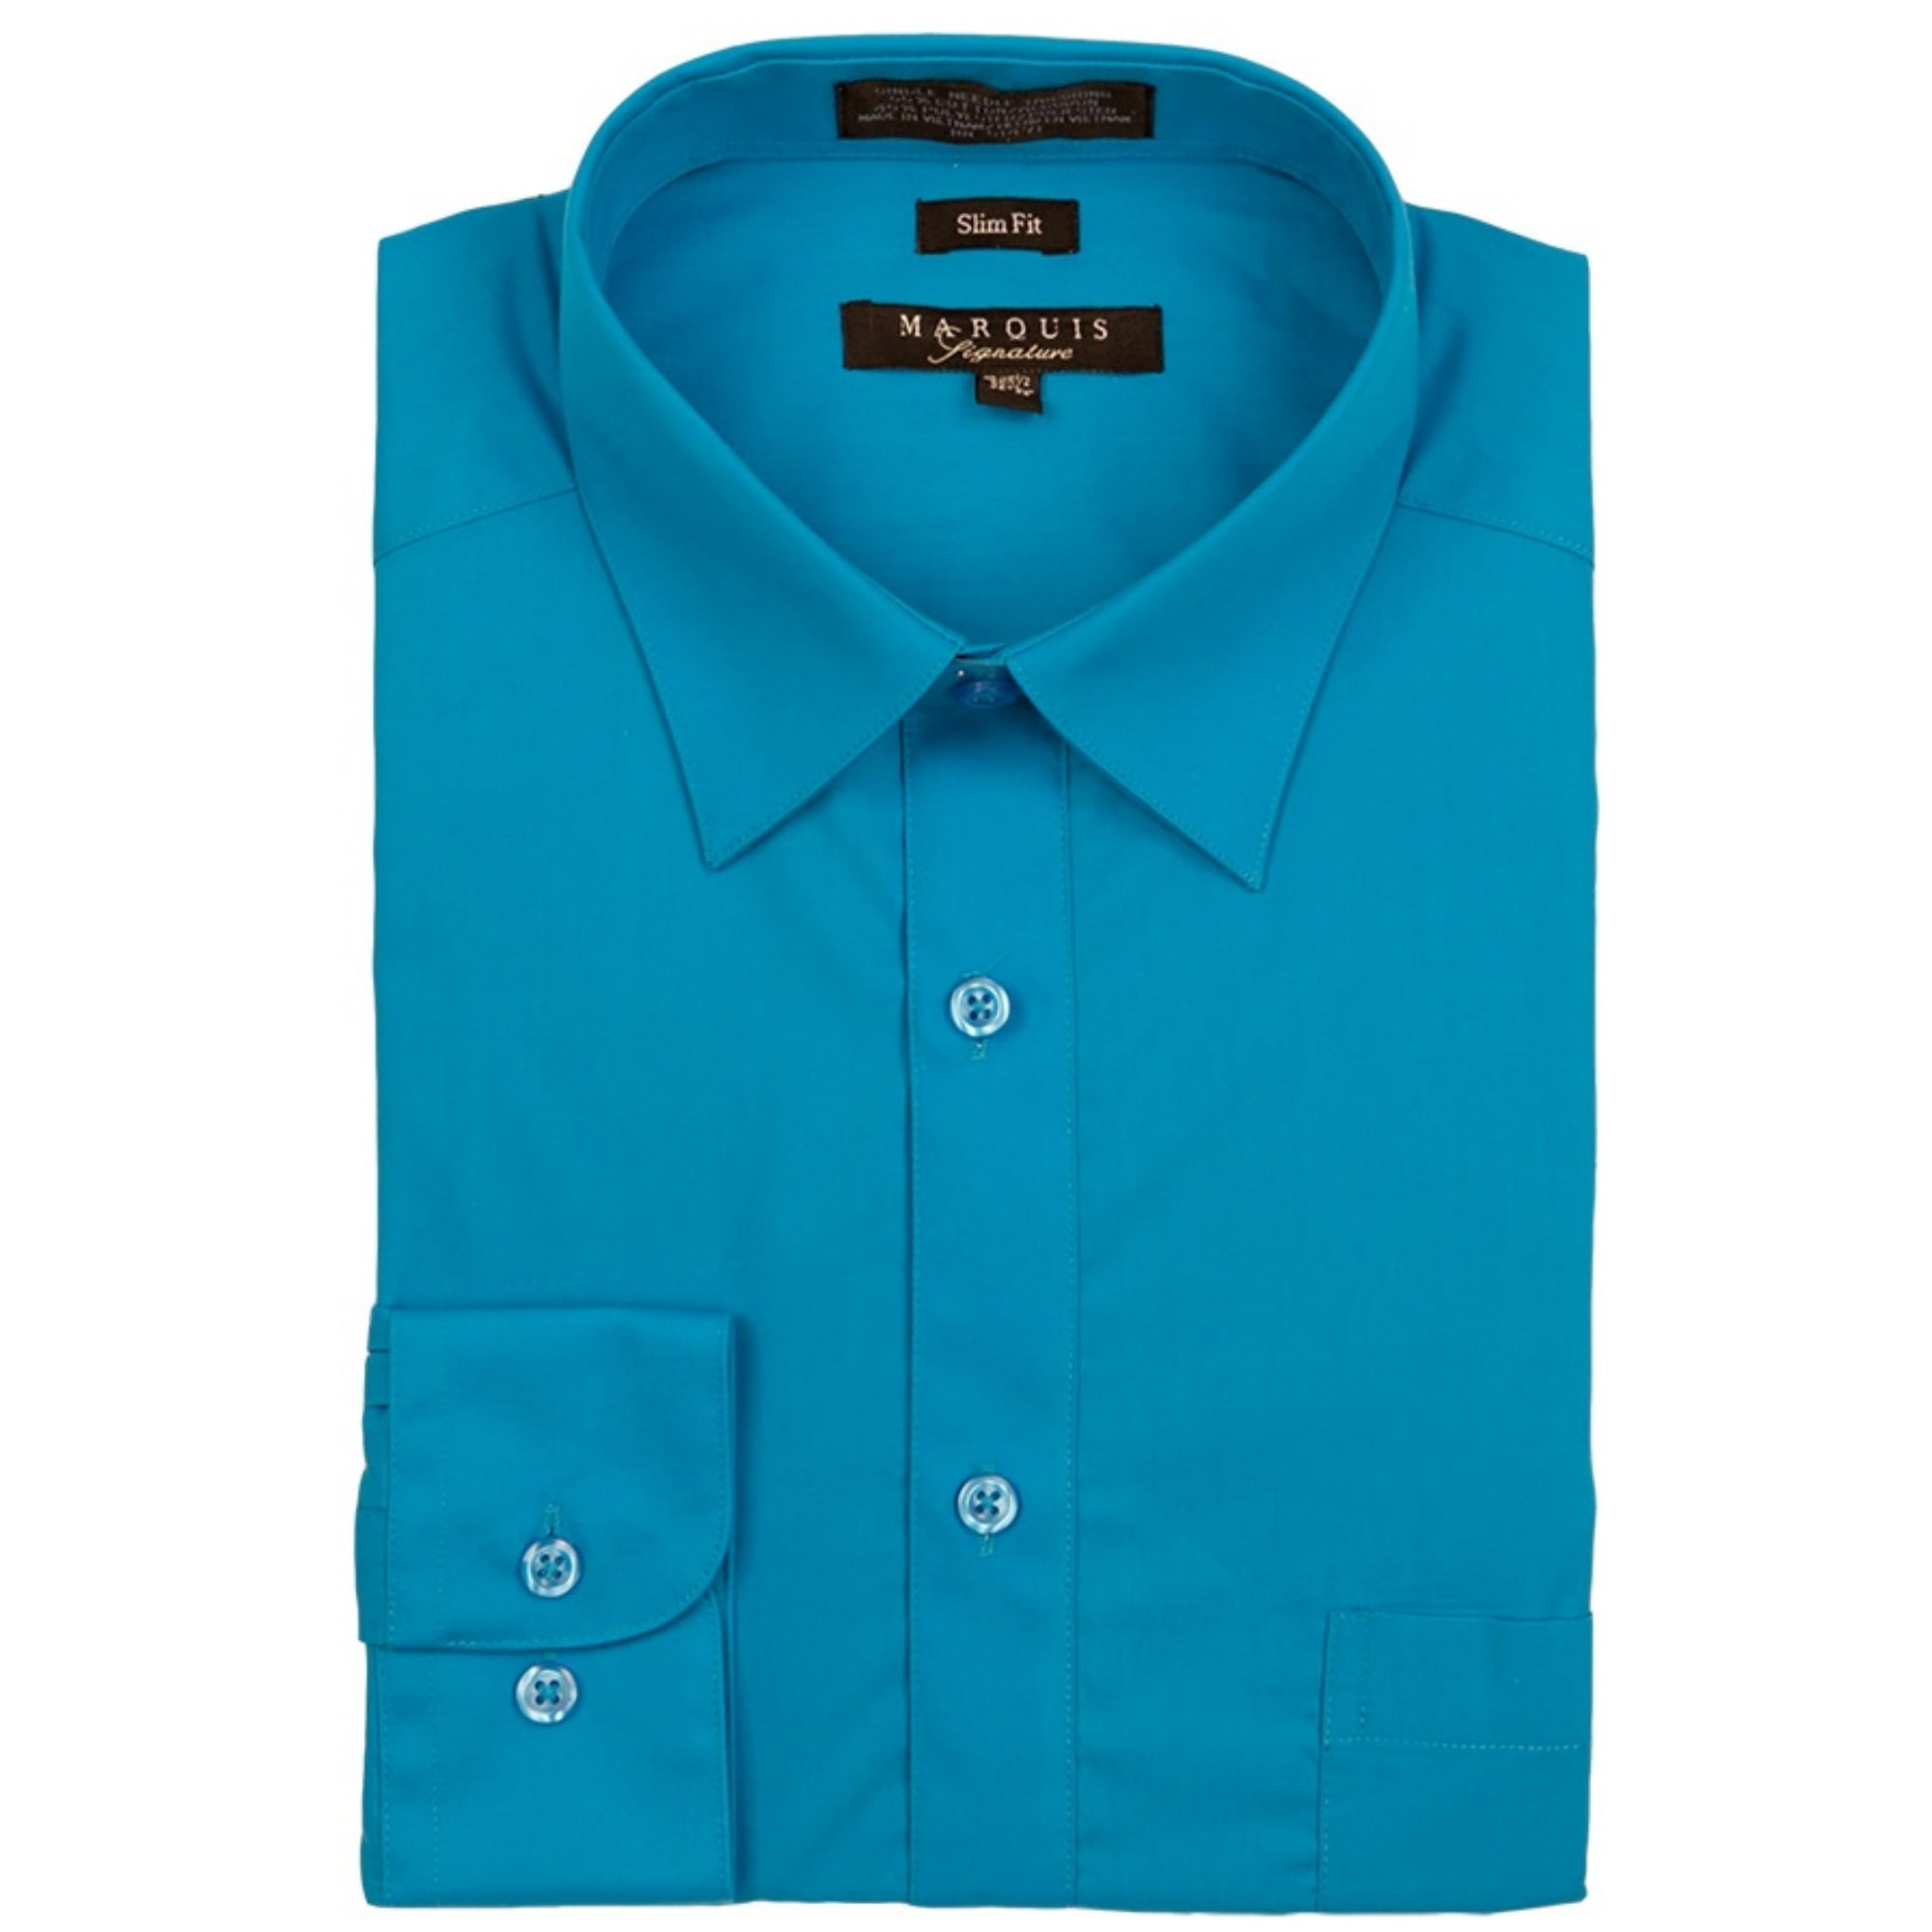 Marquis 009S Men's Cotton Blend Slim Fit Solid Button Down Shirt Caribbean Blue 